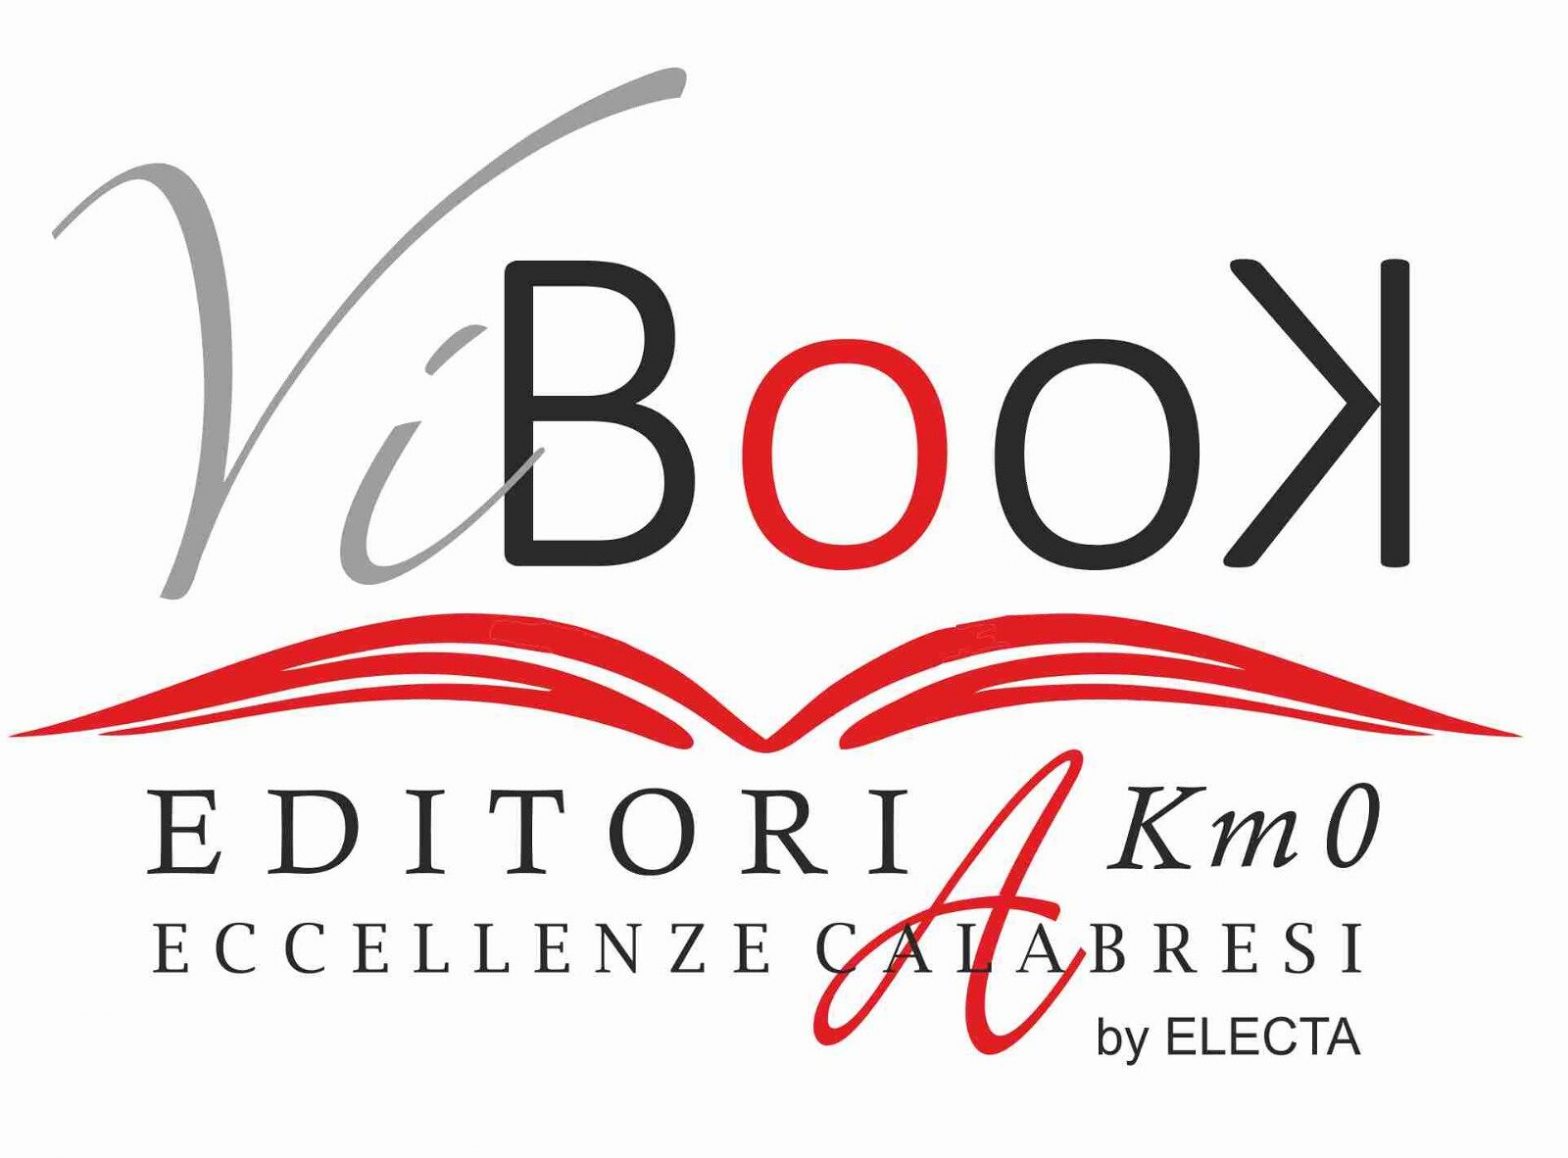 Dal 15 al 19 dicembre torna ViBooK – Editori a km 0